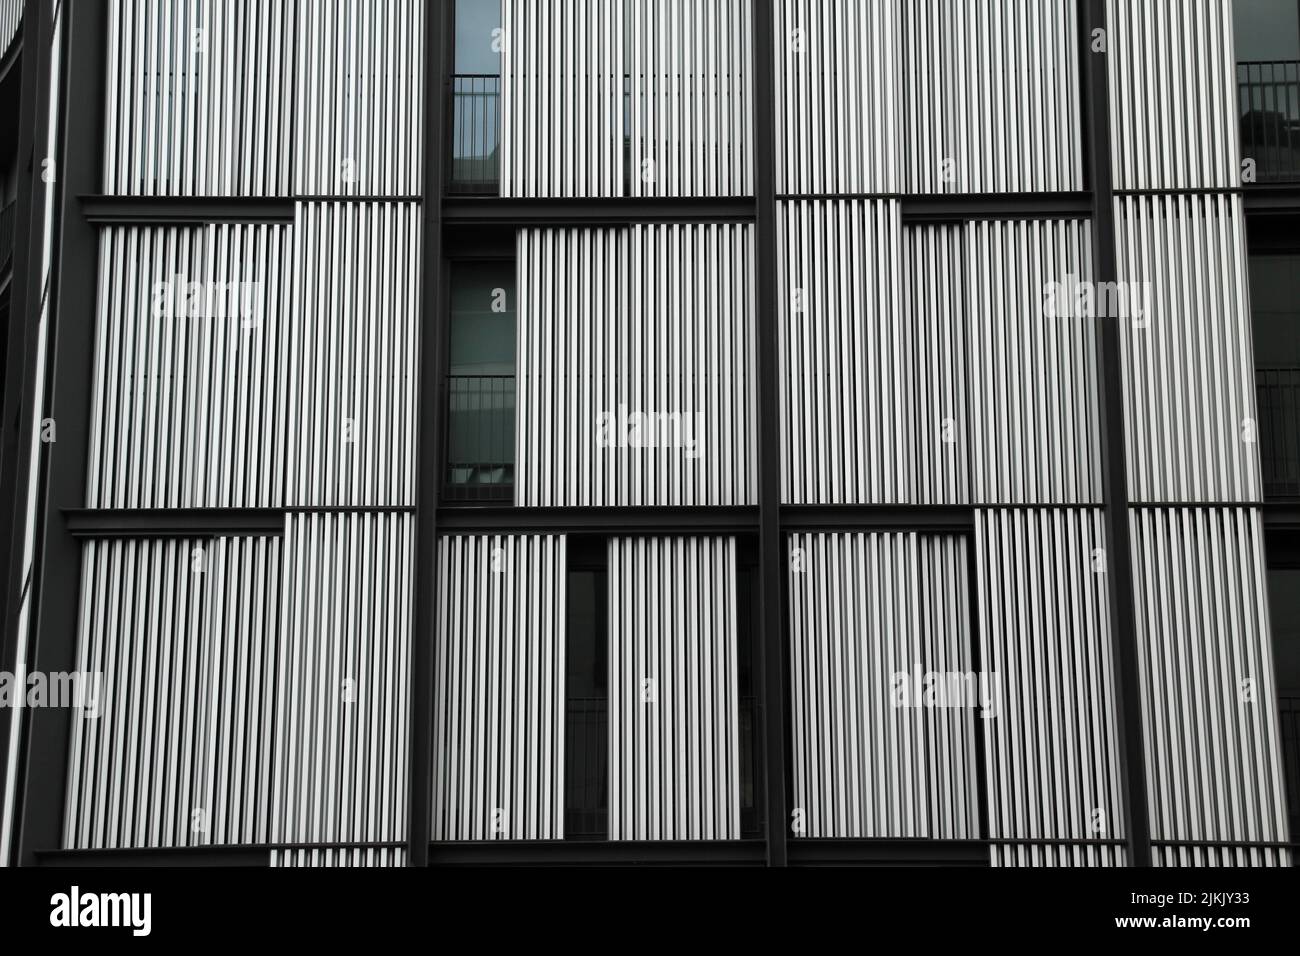 Fachada de un edificio con sistema de protección solar de paneles móviles de panal de acero, Bilbao, España Foto de stock